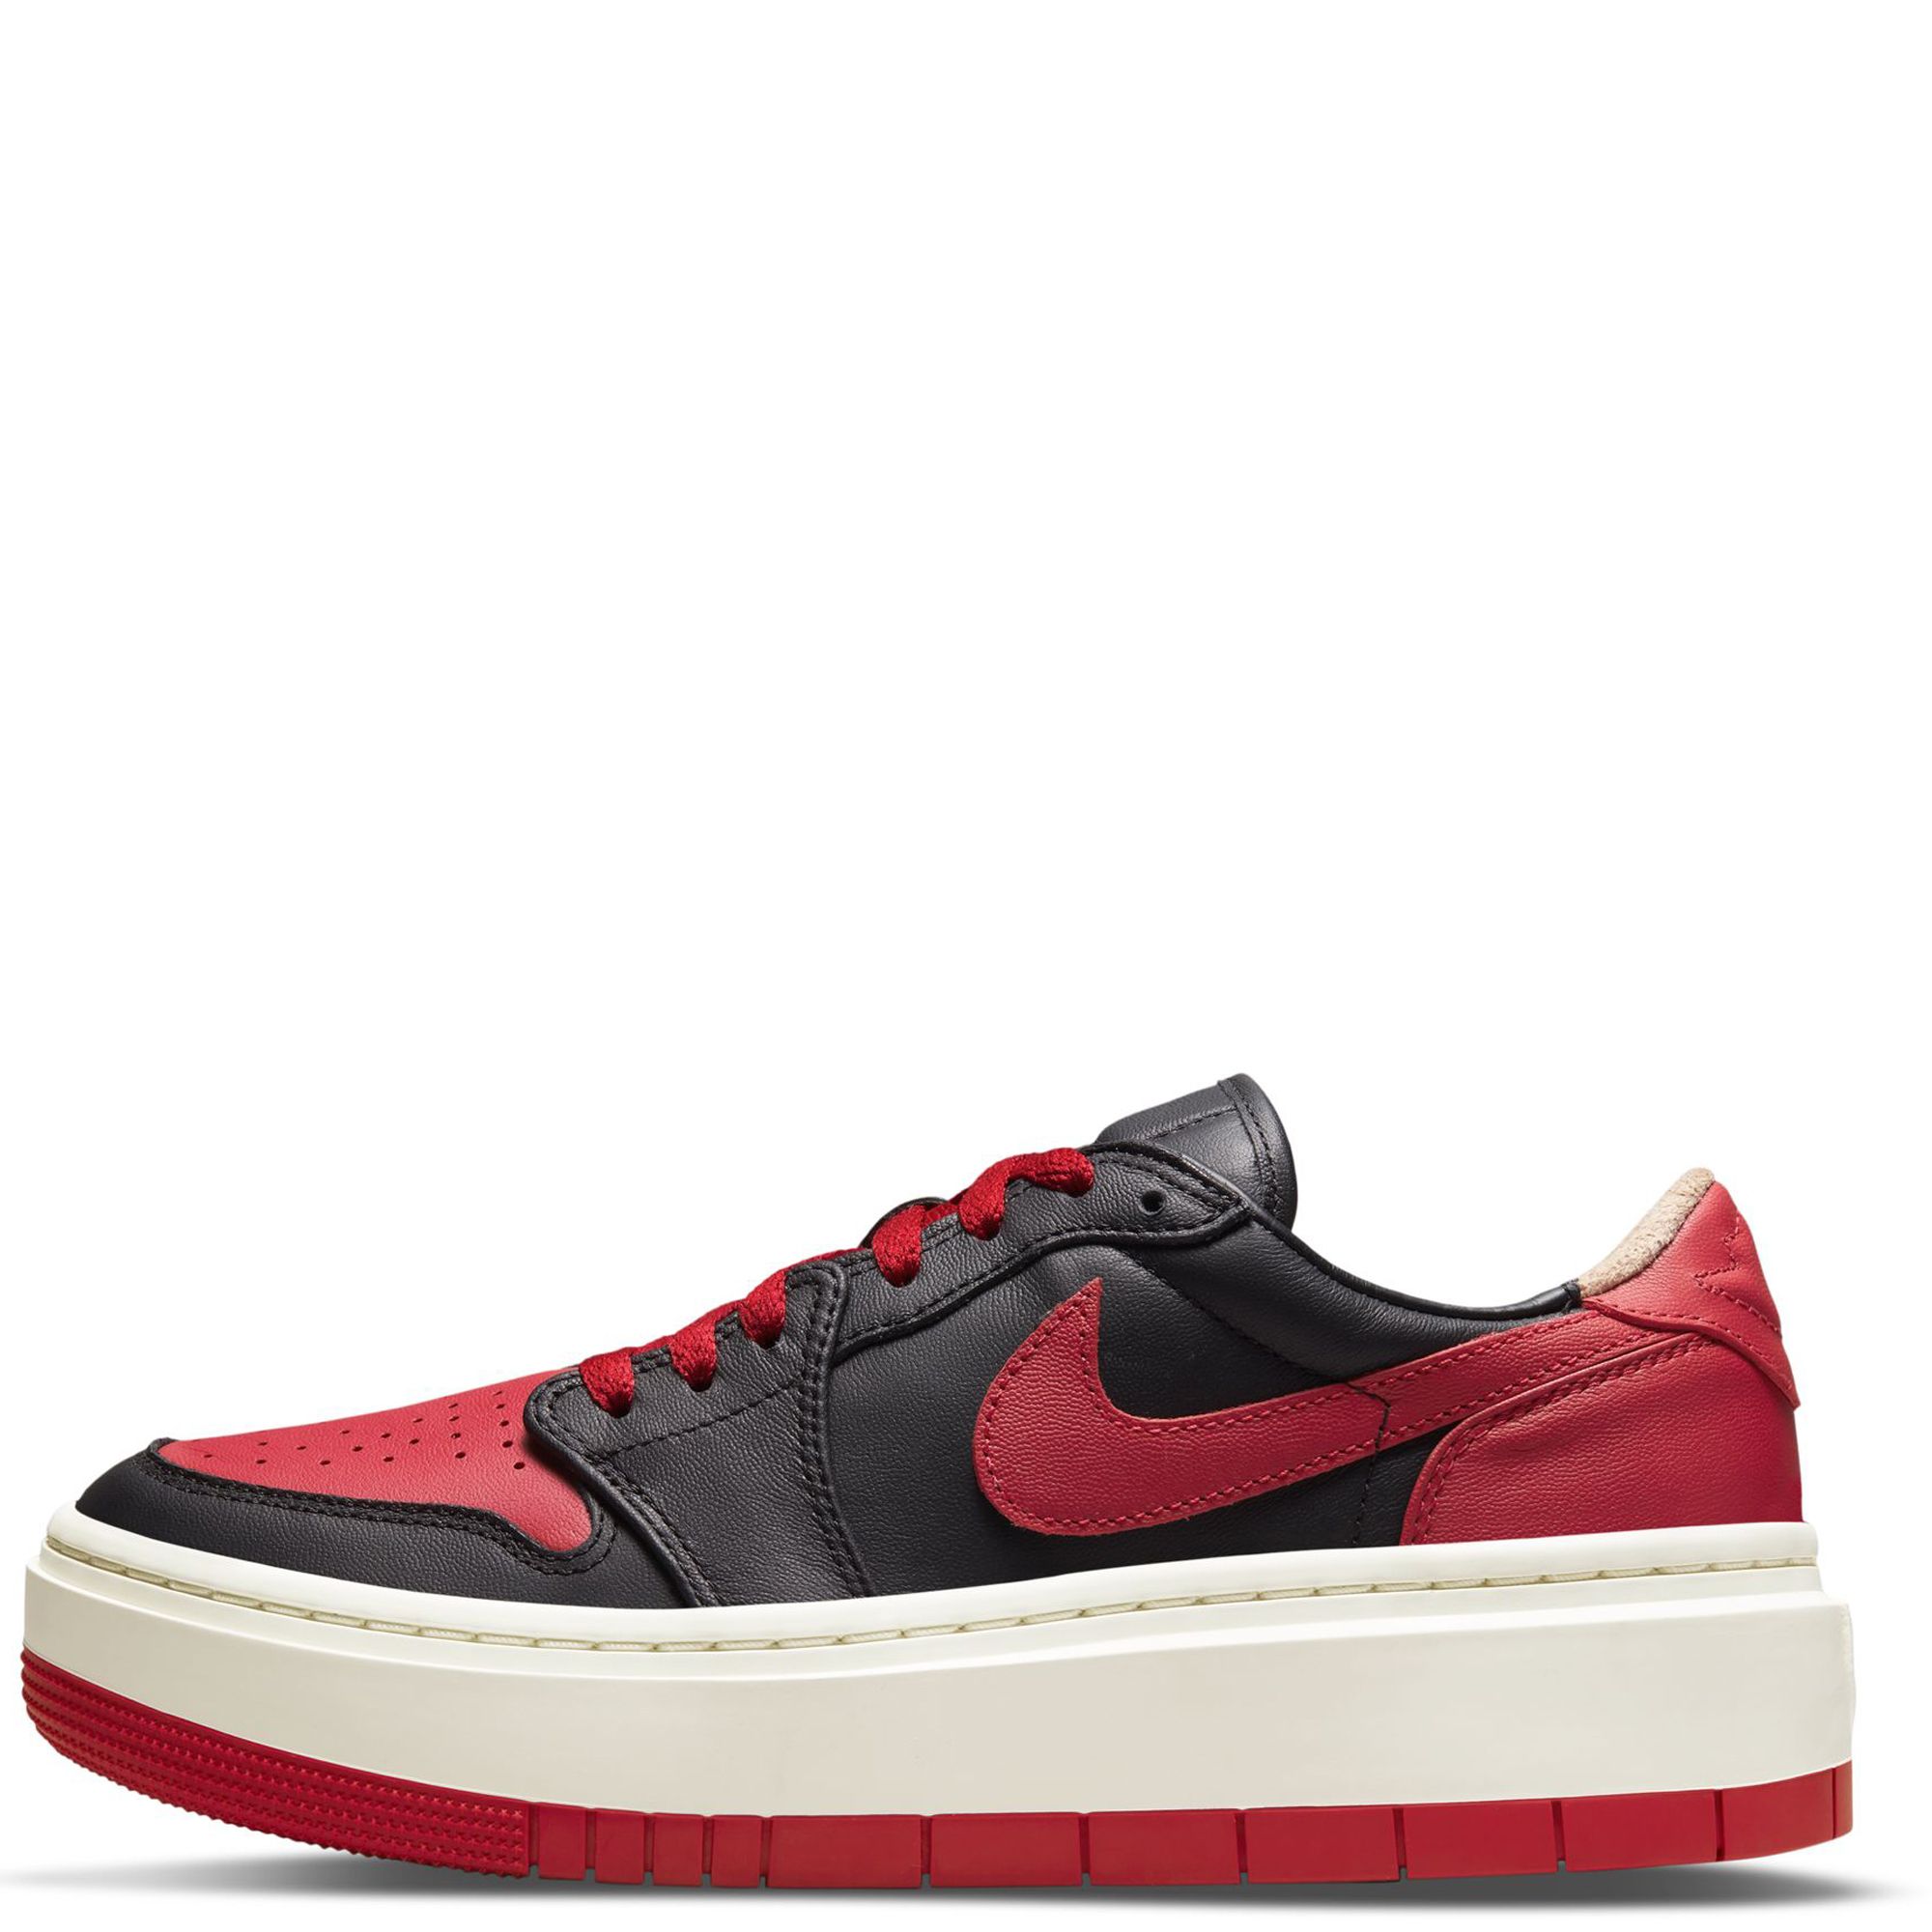 Jordan, Shoes, Black Red Bottom Air Jordan Retro